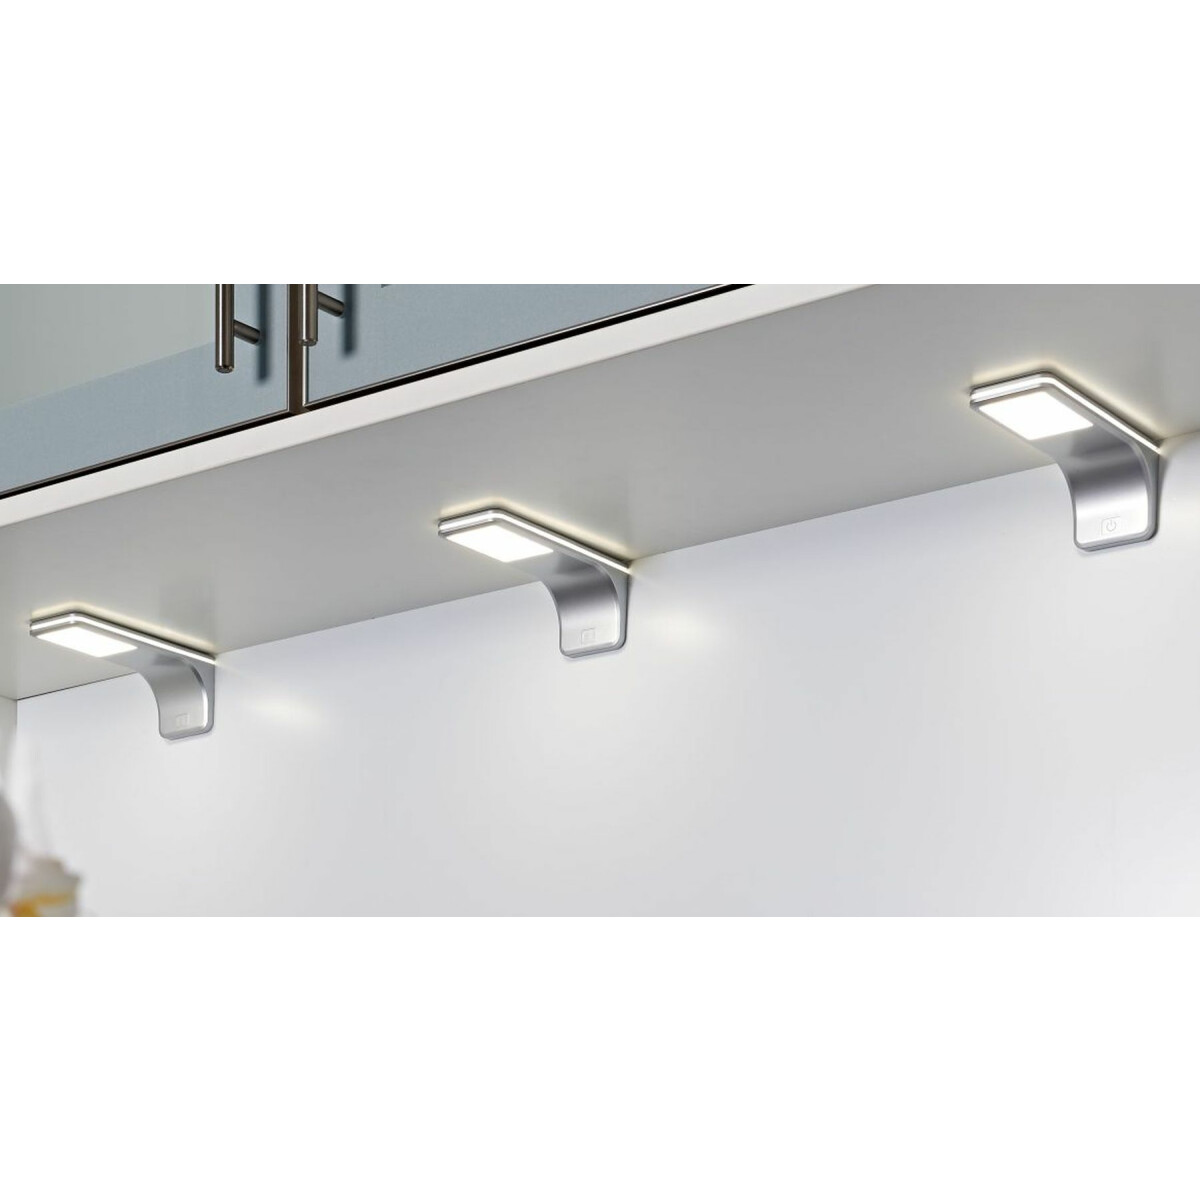 LED Küchenleuchte Erle, Unterbauleuchte Küche 5x3,5 W, dimmbar